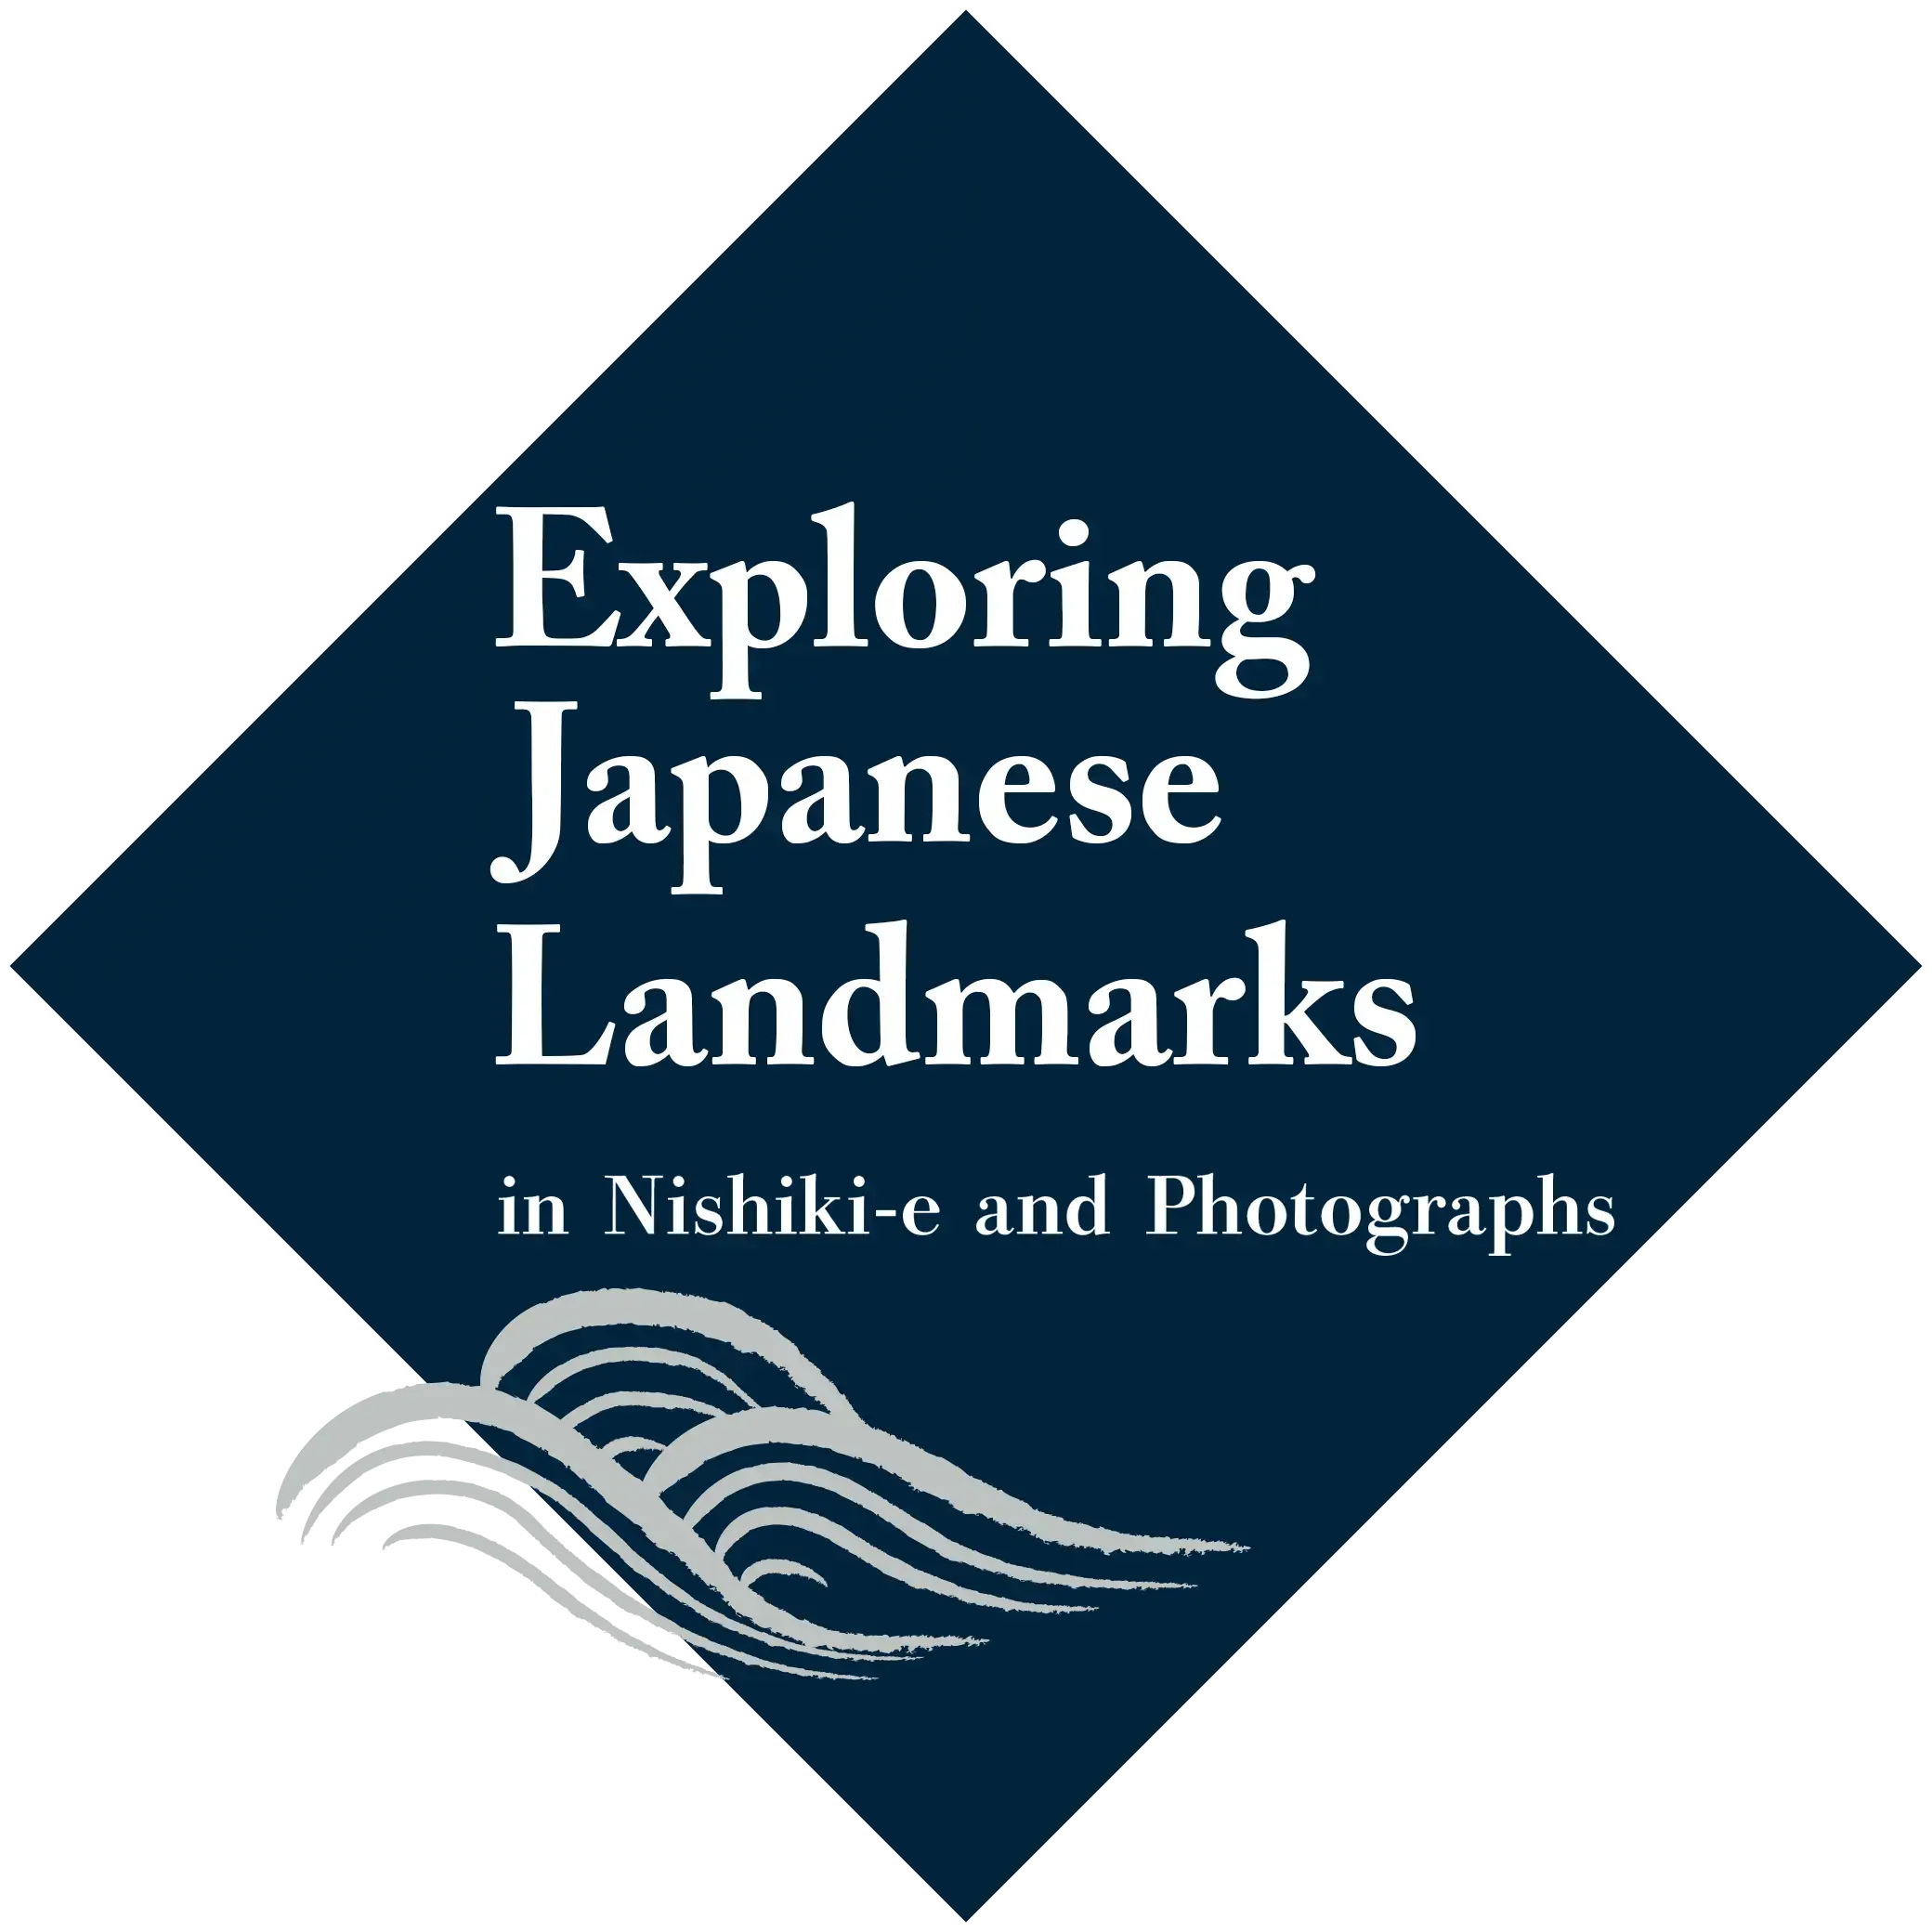 Exploring Japanese Landmarks in Nishiki-e and Photographs